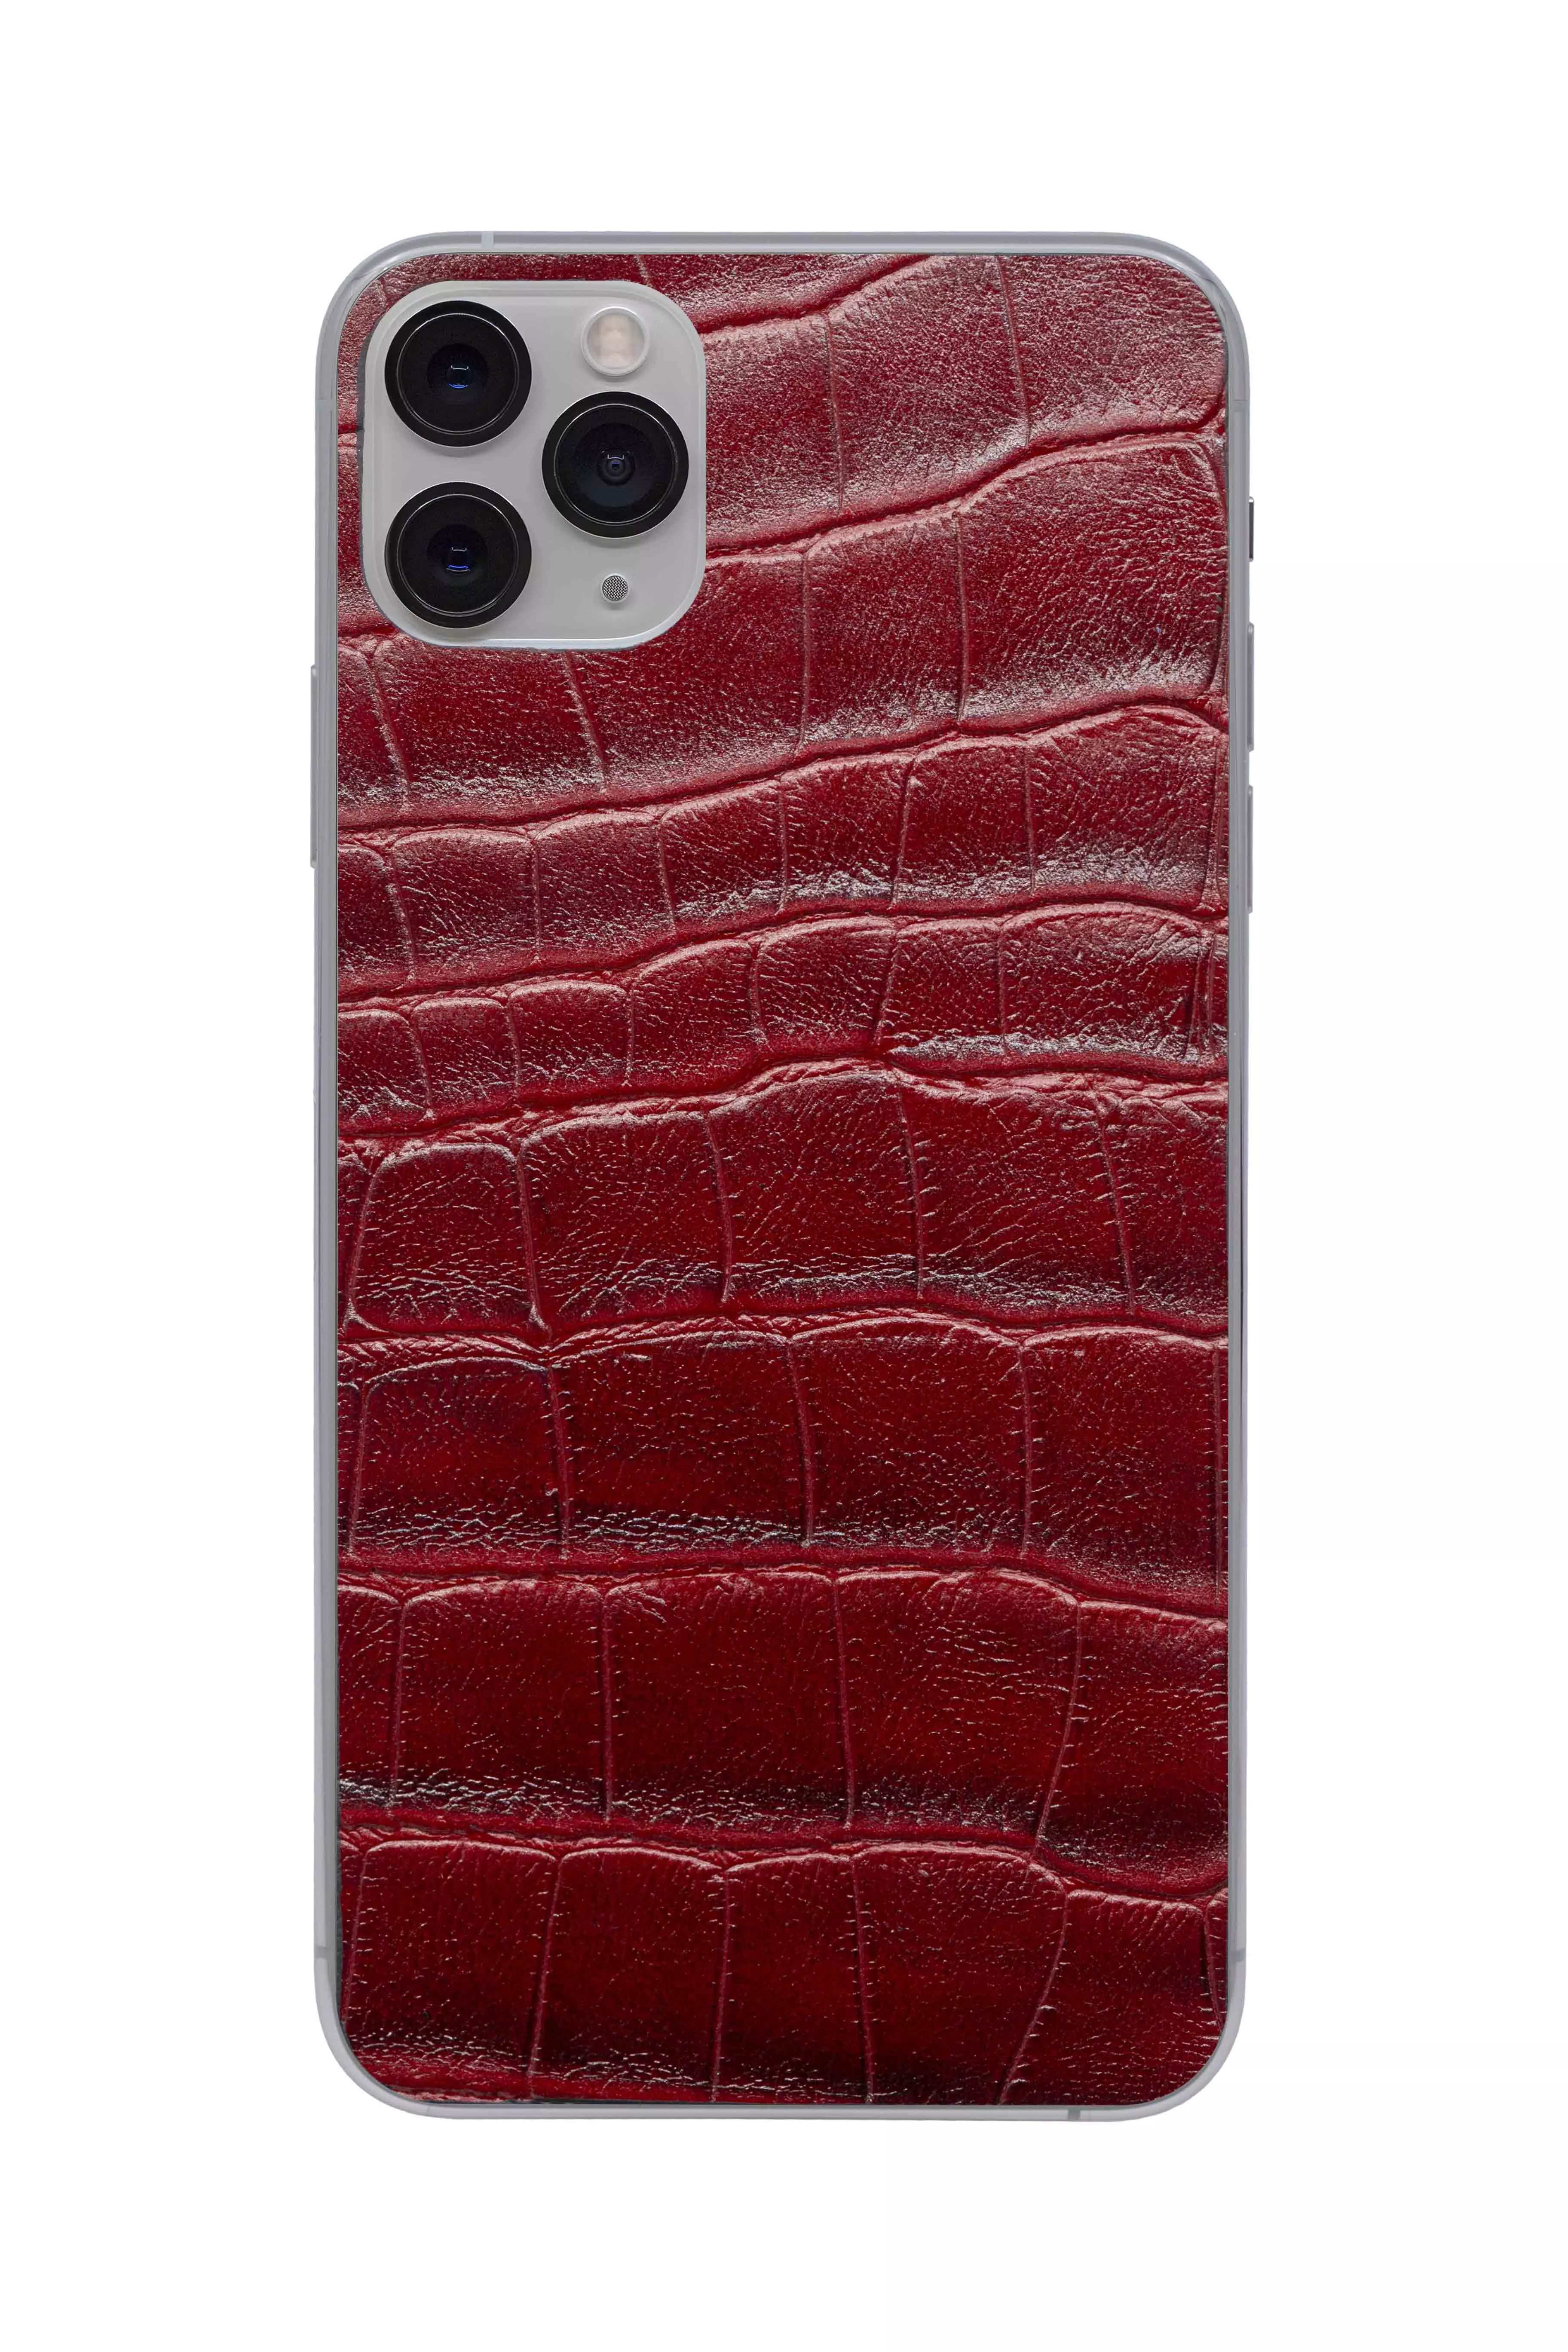 Защитная наклейка из натуральной кожи для iPhone 11 Pro Max, Вид Красный 3. Вид 1